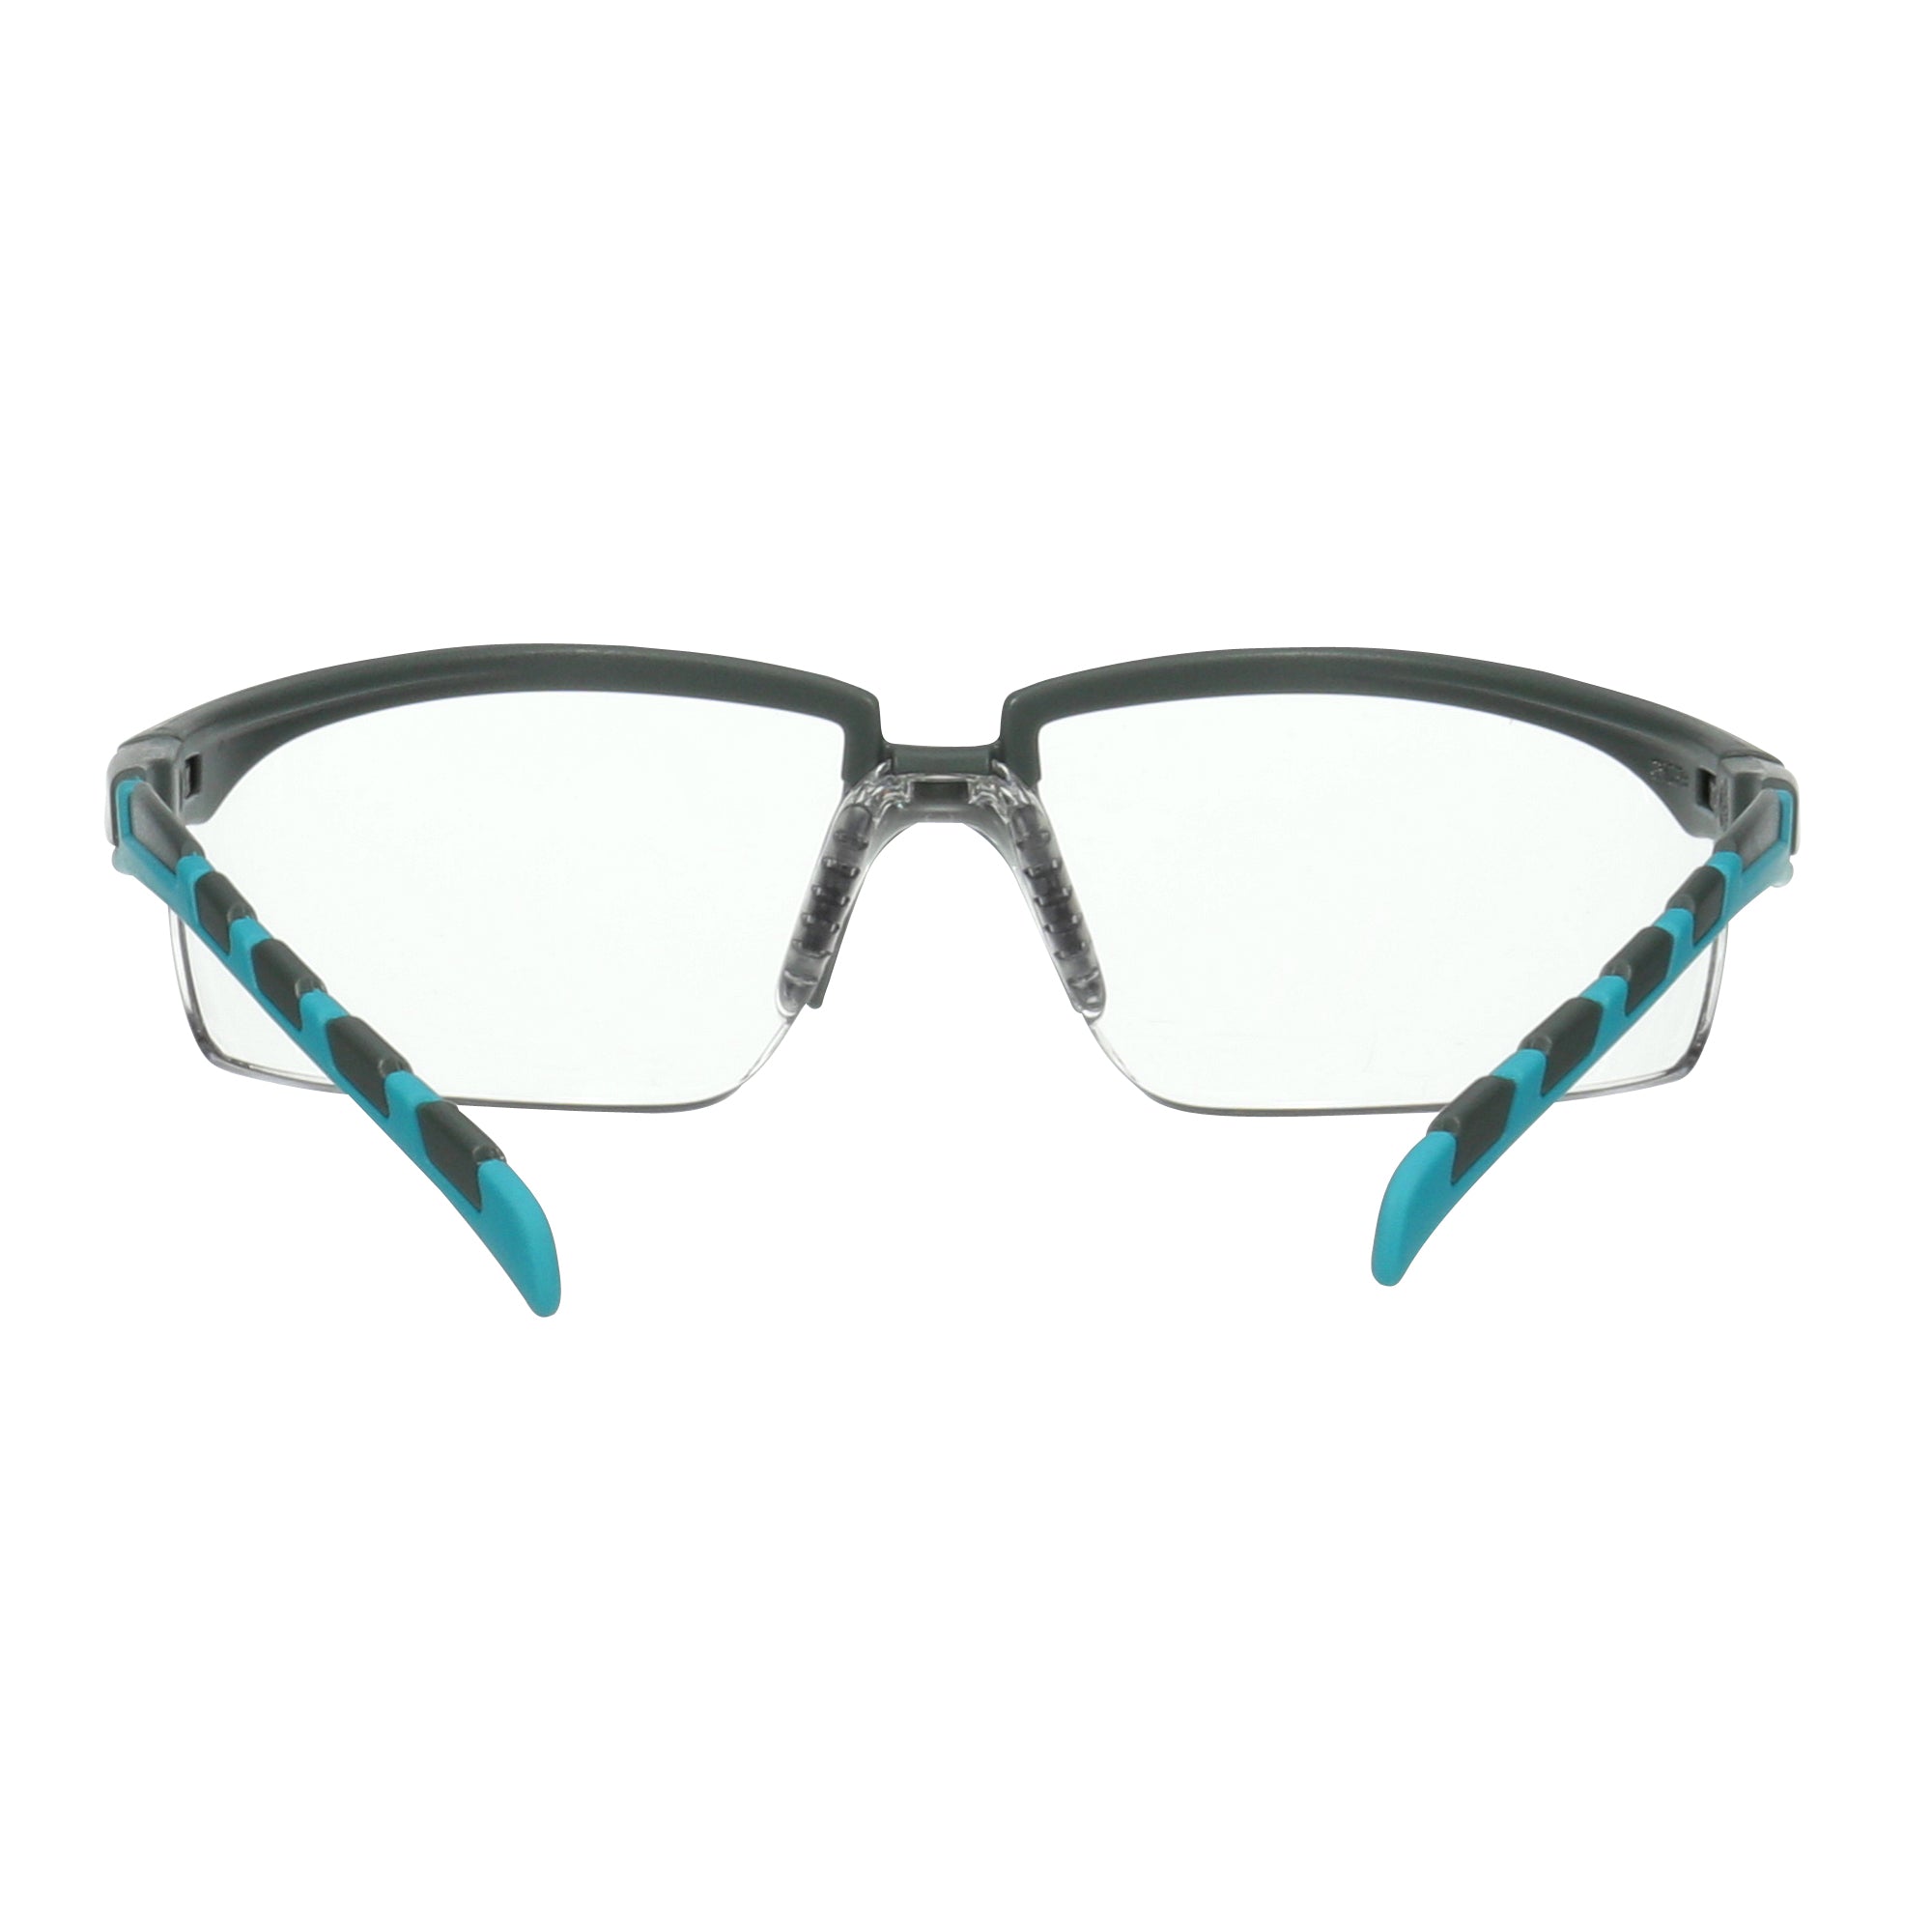 3m-occhiali-sicurezza-solus-2000-lenti-trasparenti-anti-graffio-s2001af-blu